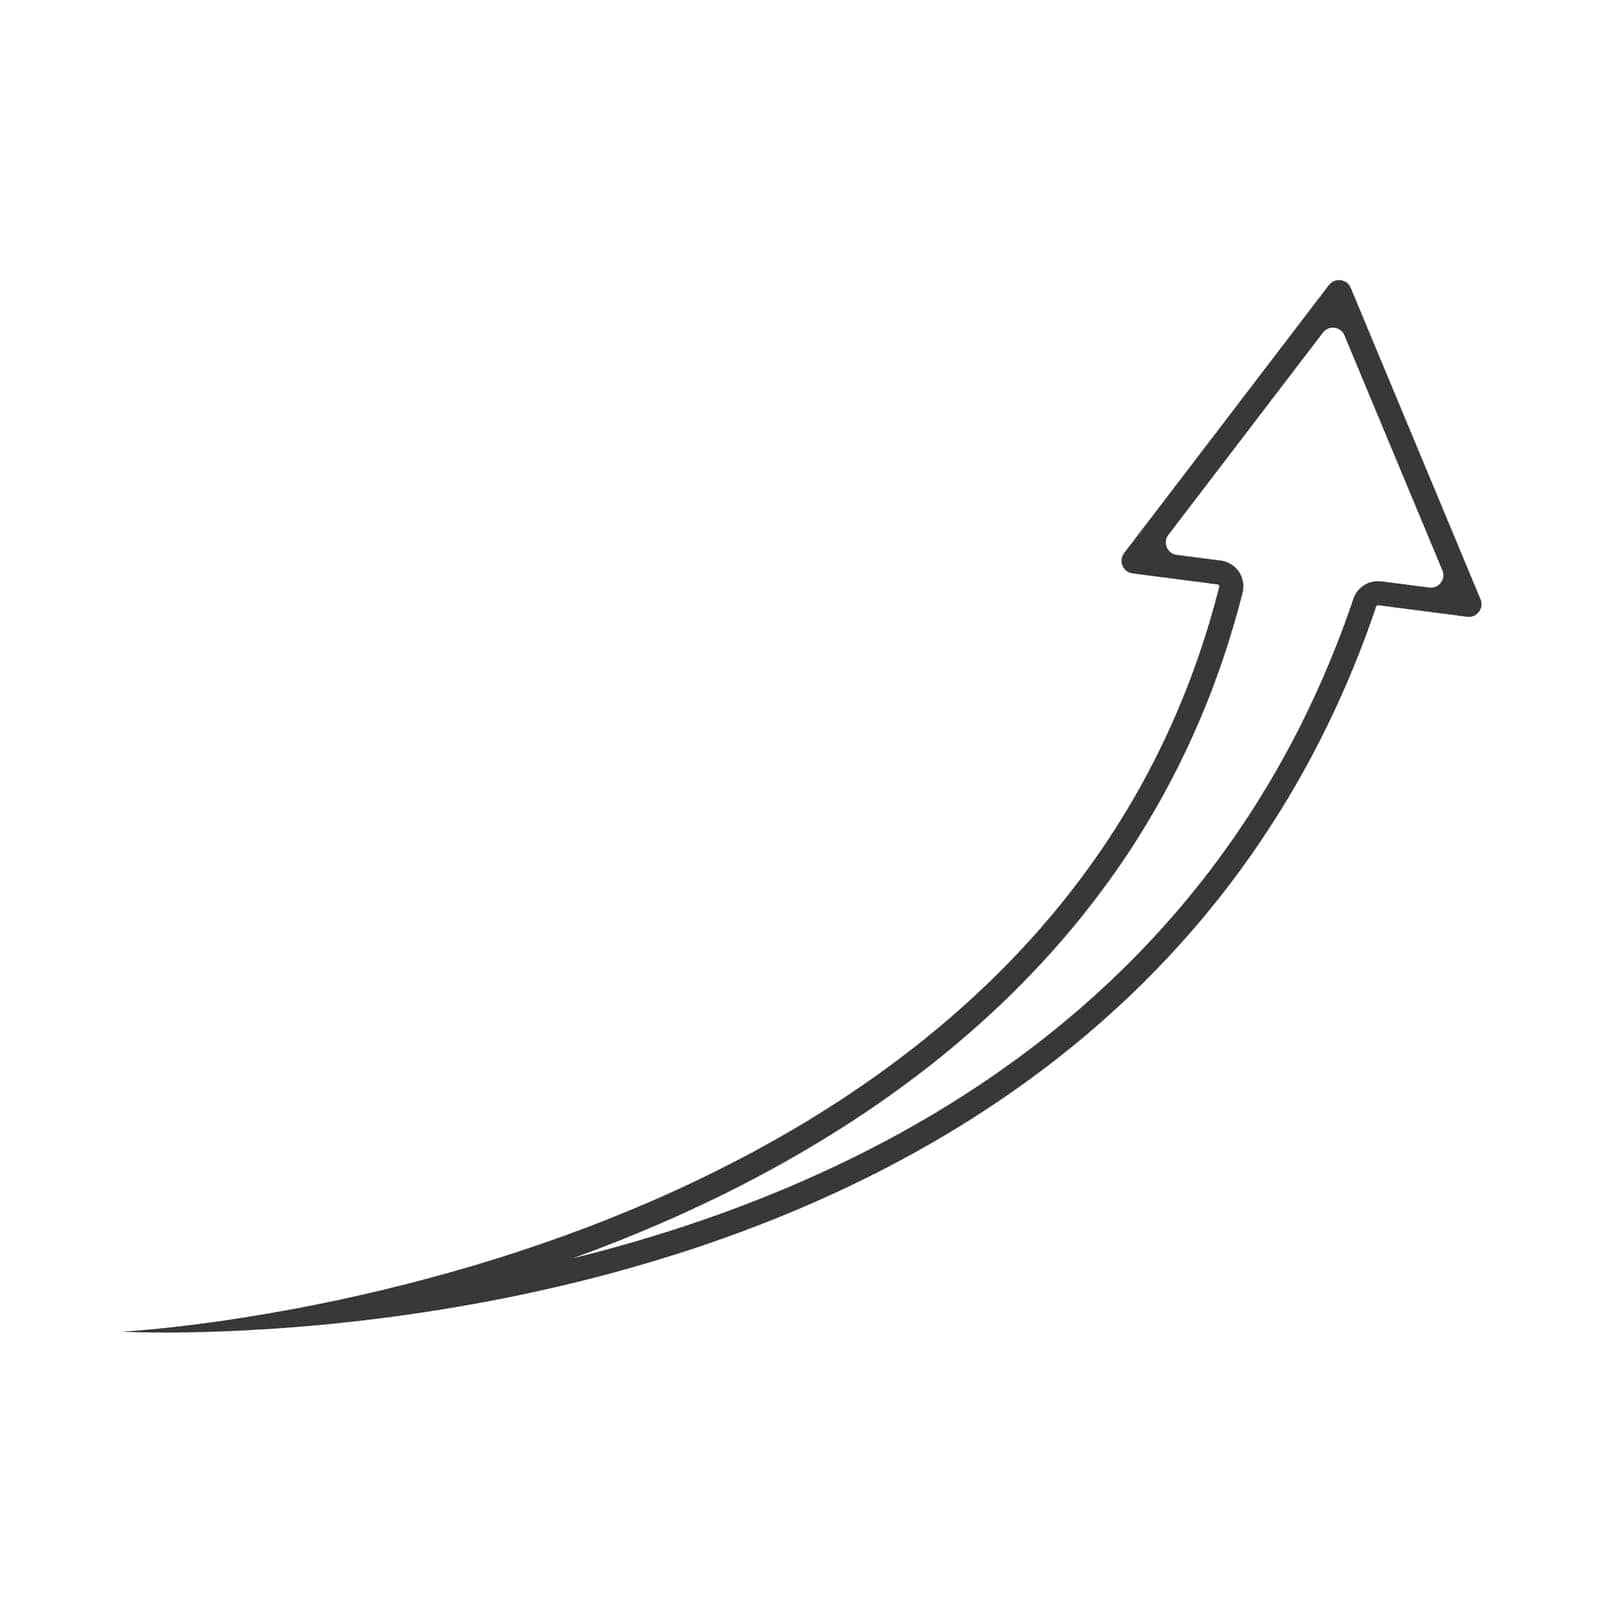 Growth arrow black outline. Black arrow up stroke icon. Linear arrow vector. by Moreidea